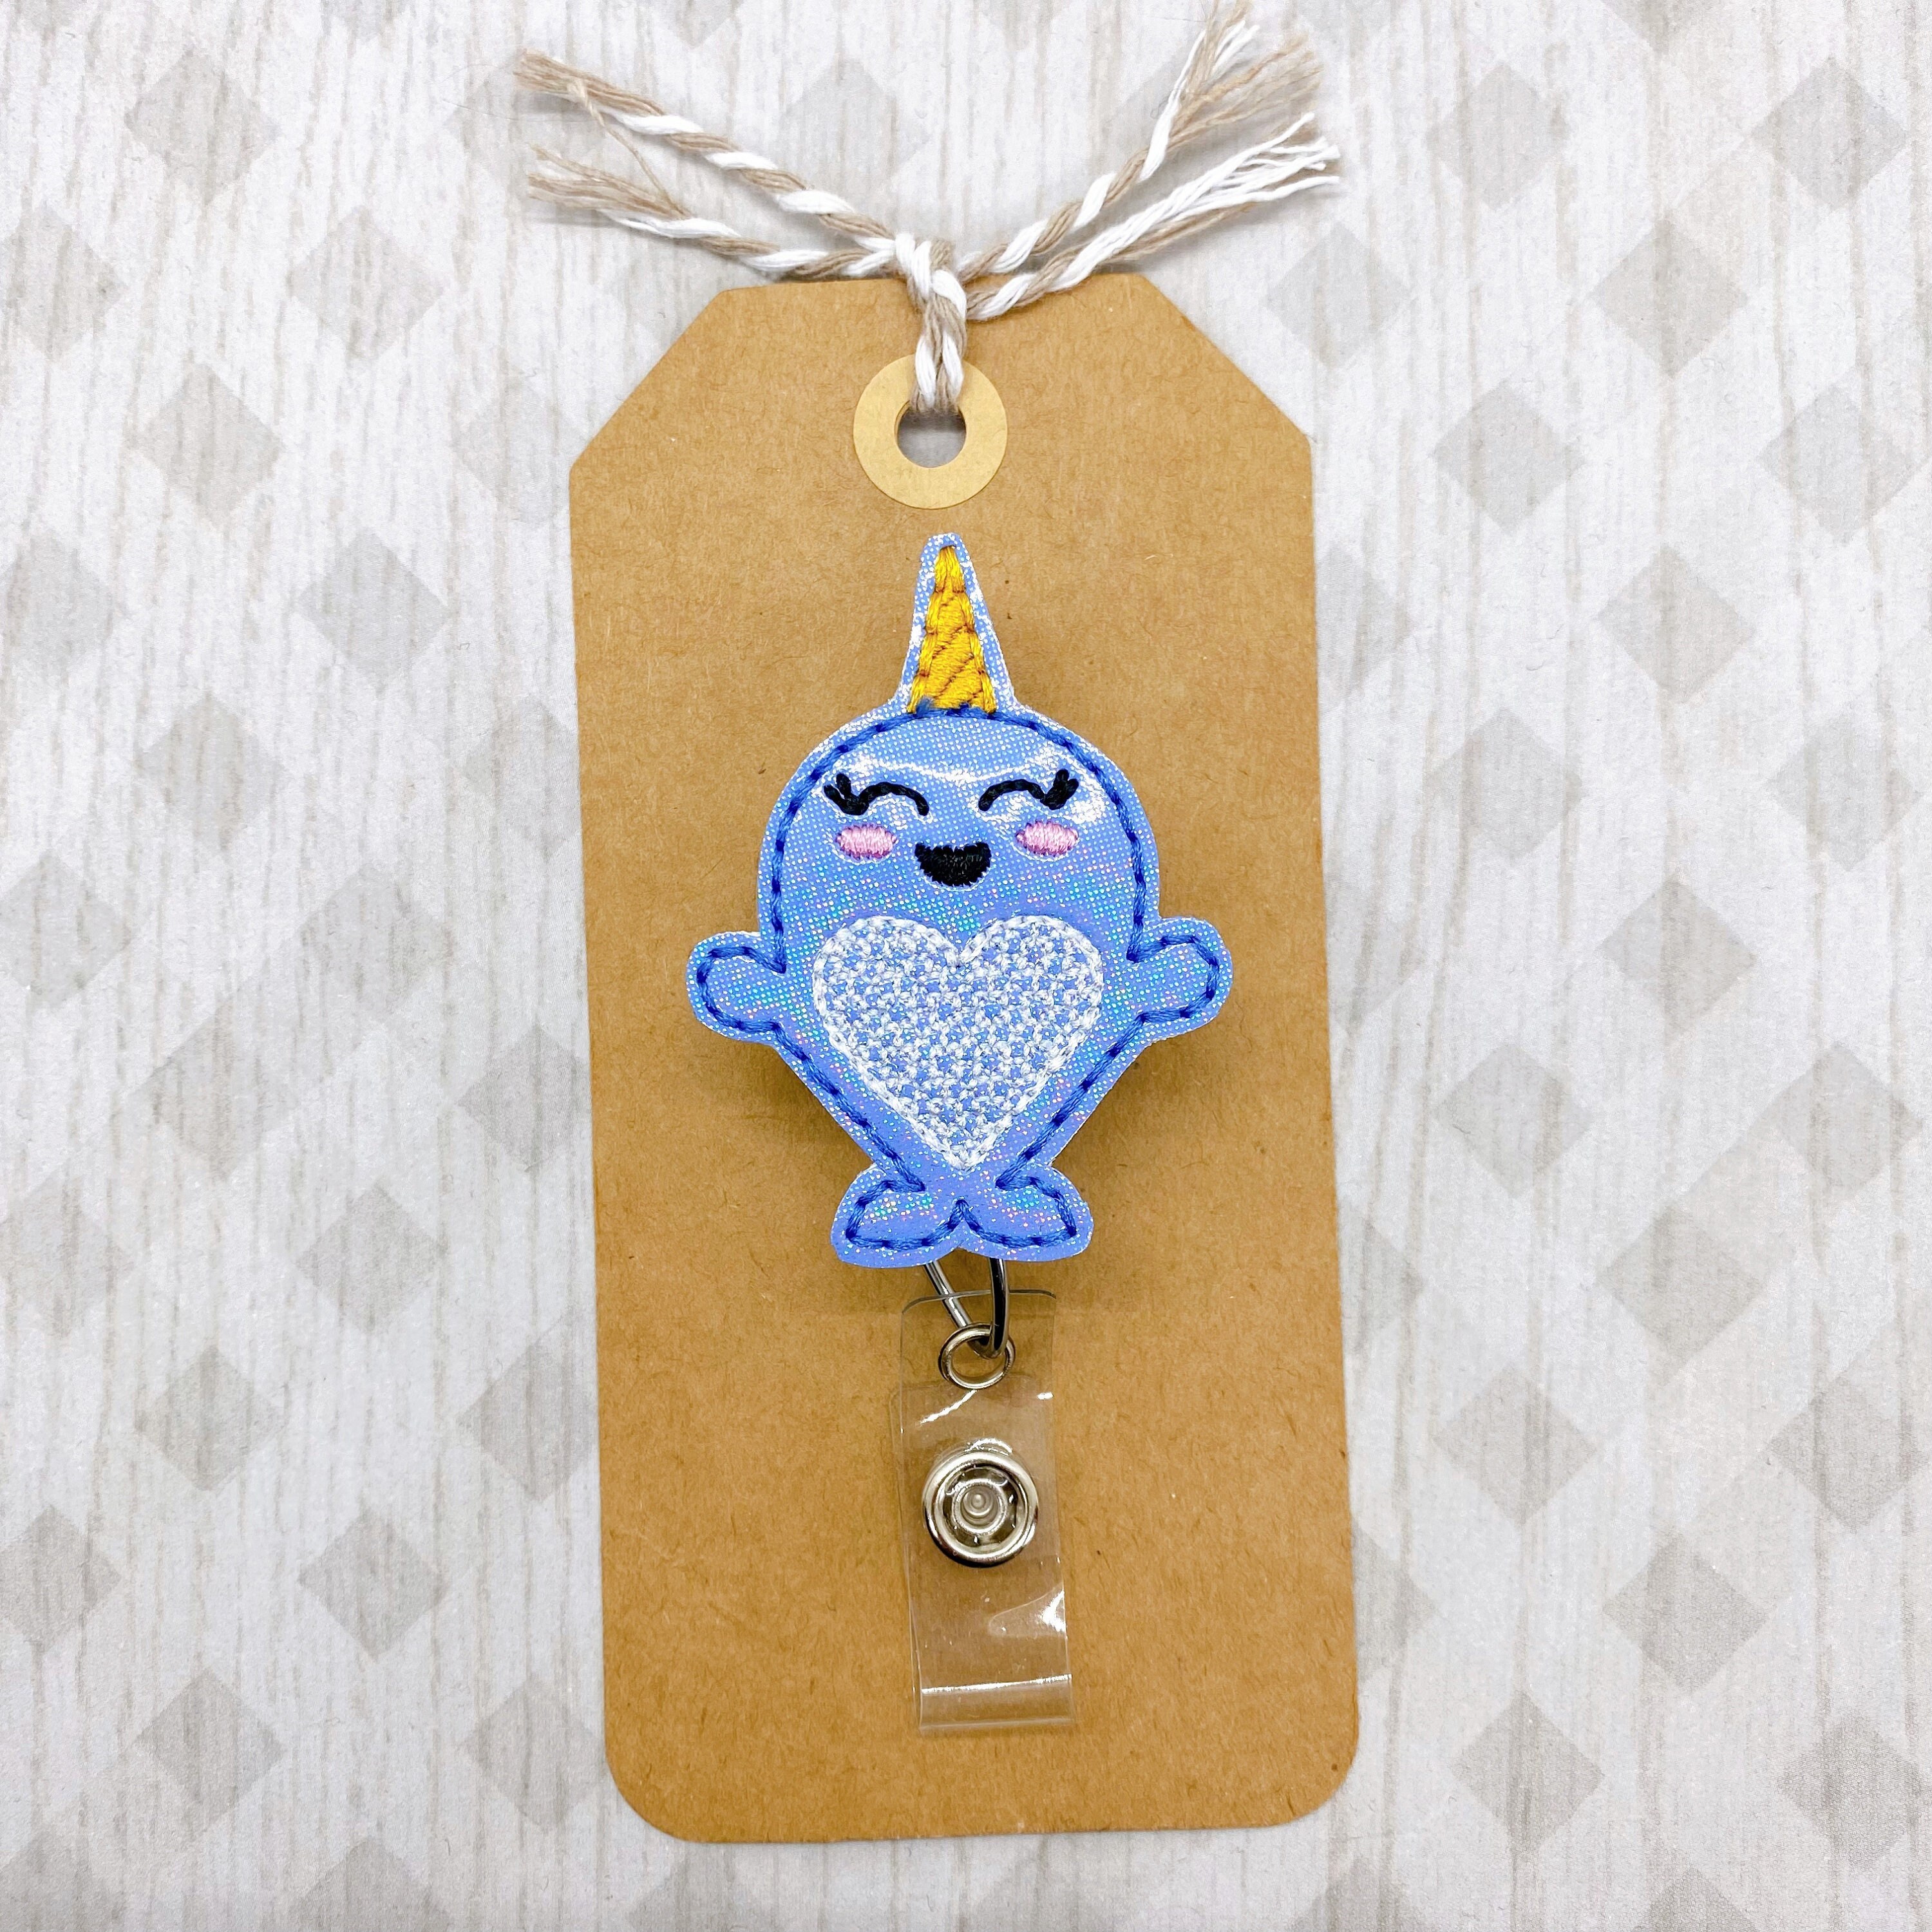  Narwhal Gifts Lanyard Key Lanyard ID Badge Holder